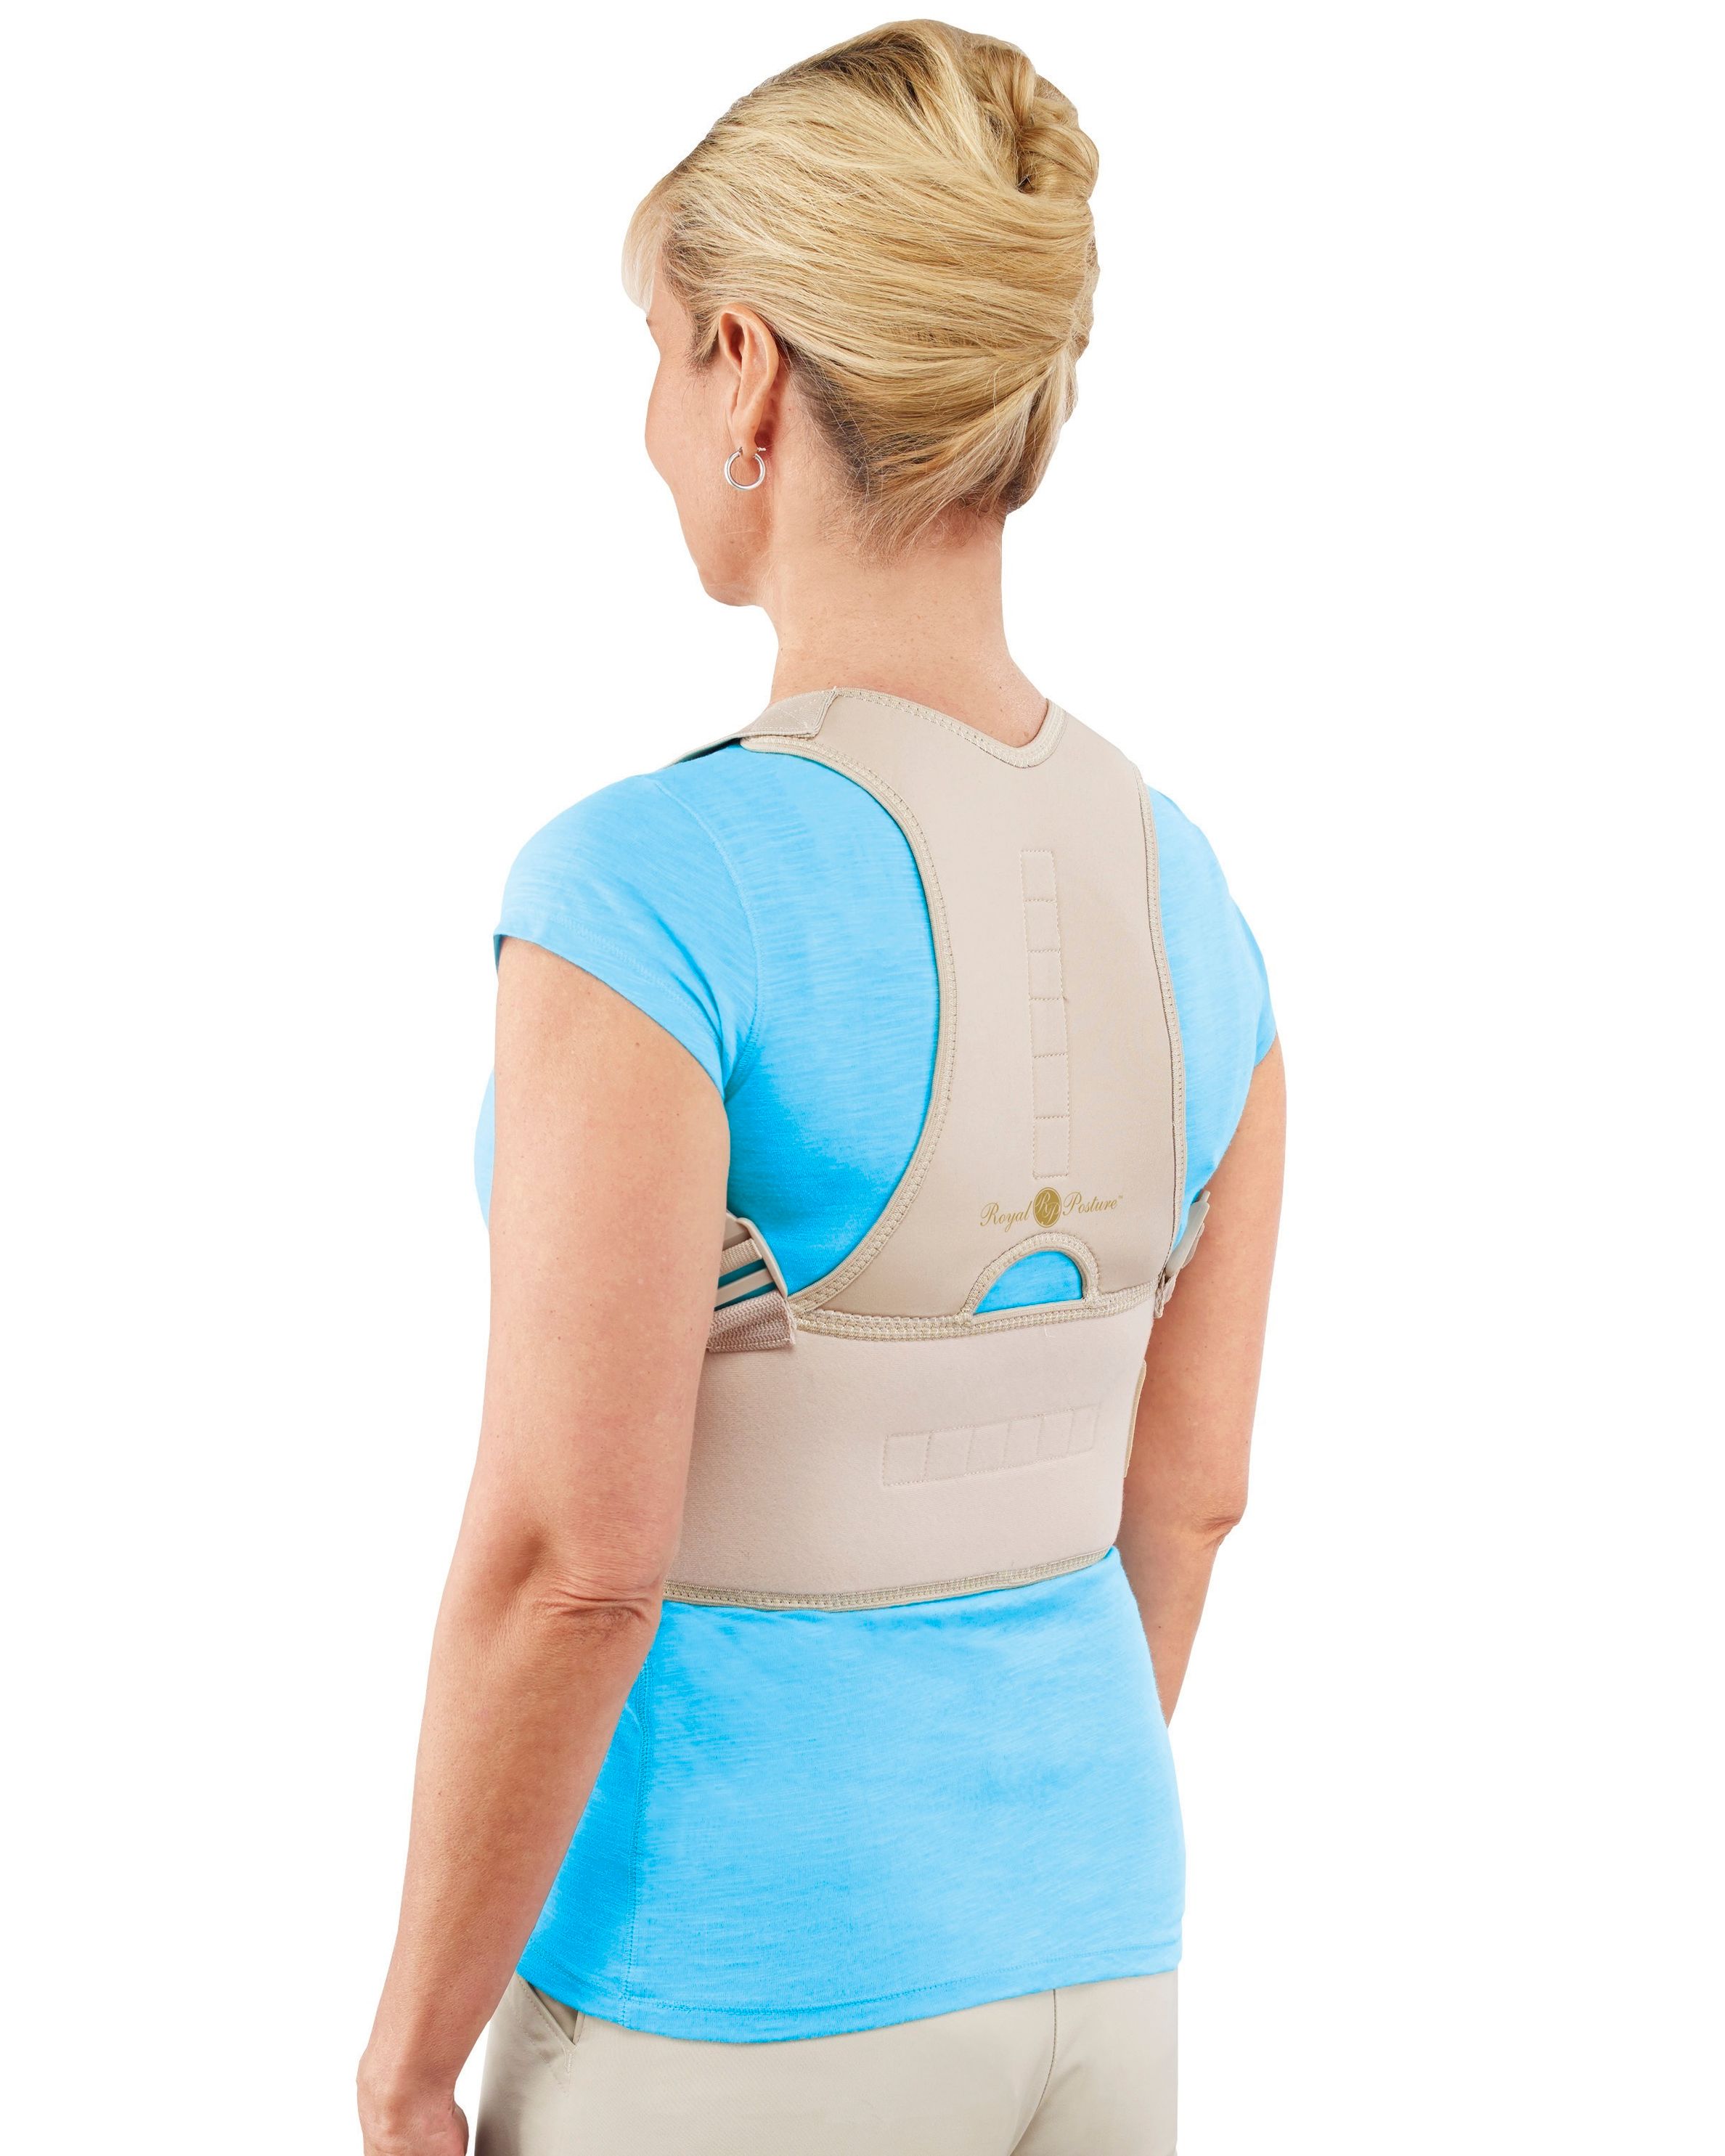 Haltungskorrektor Rücken-Bandage, Größe: S & M | Weltbild.at